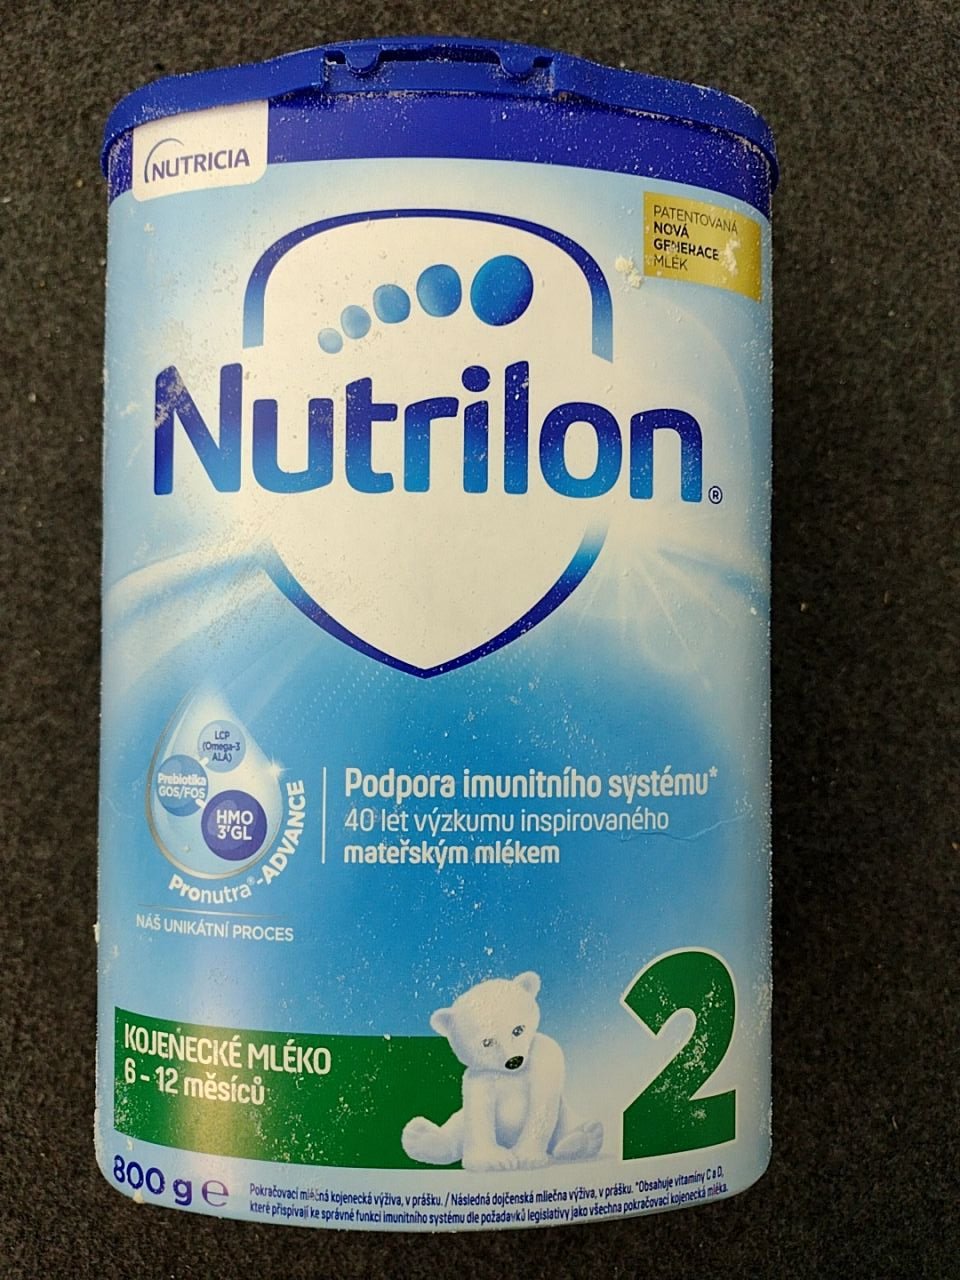 Kojenecké mléko Nutrilon 2, pro děti od 6-12 měsíců